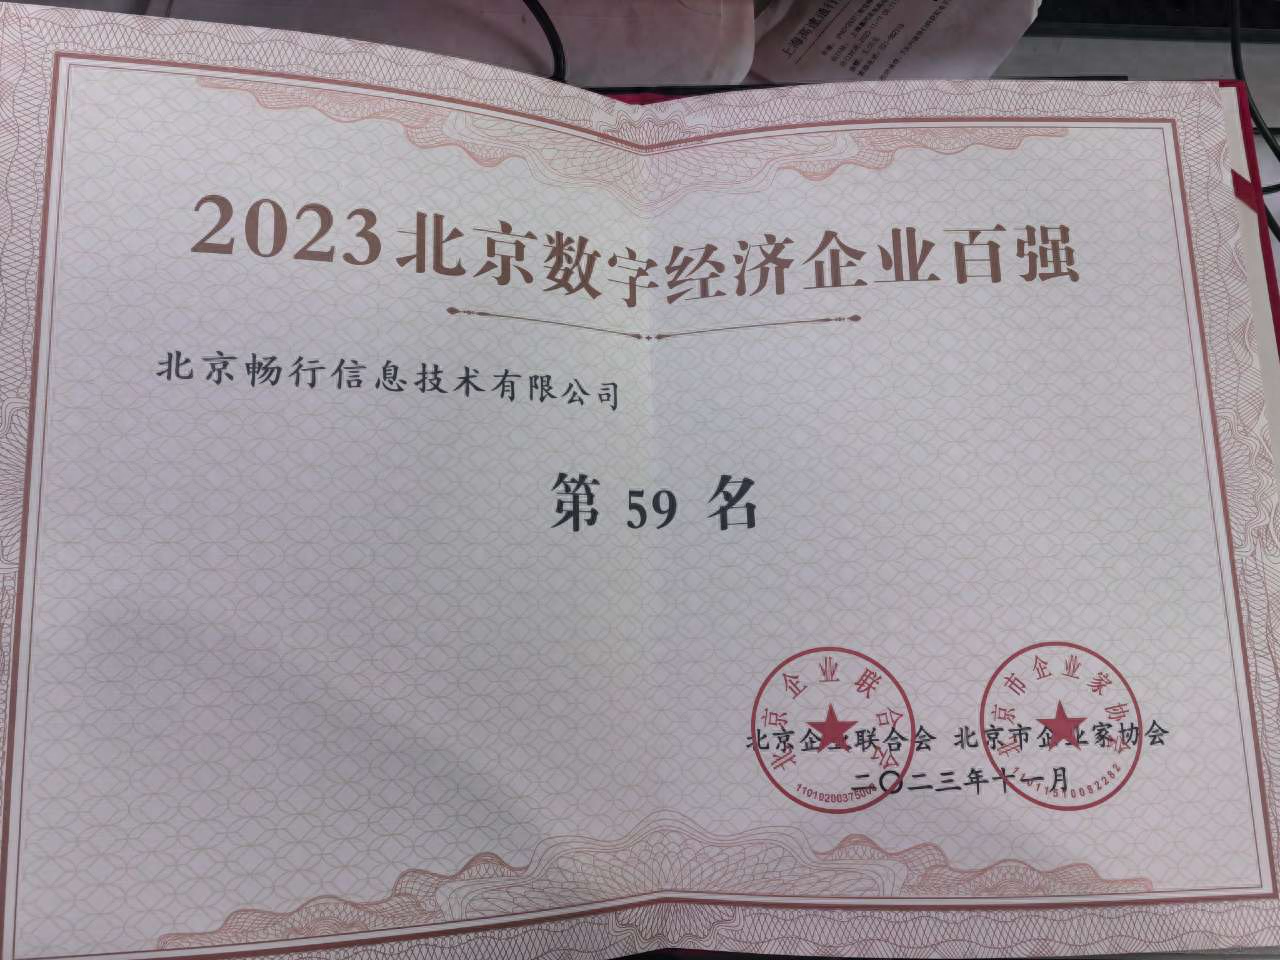 嘀嗒出行入选2023北京高精尖企业百强、数字经济百强等五个百强企业榜单